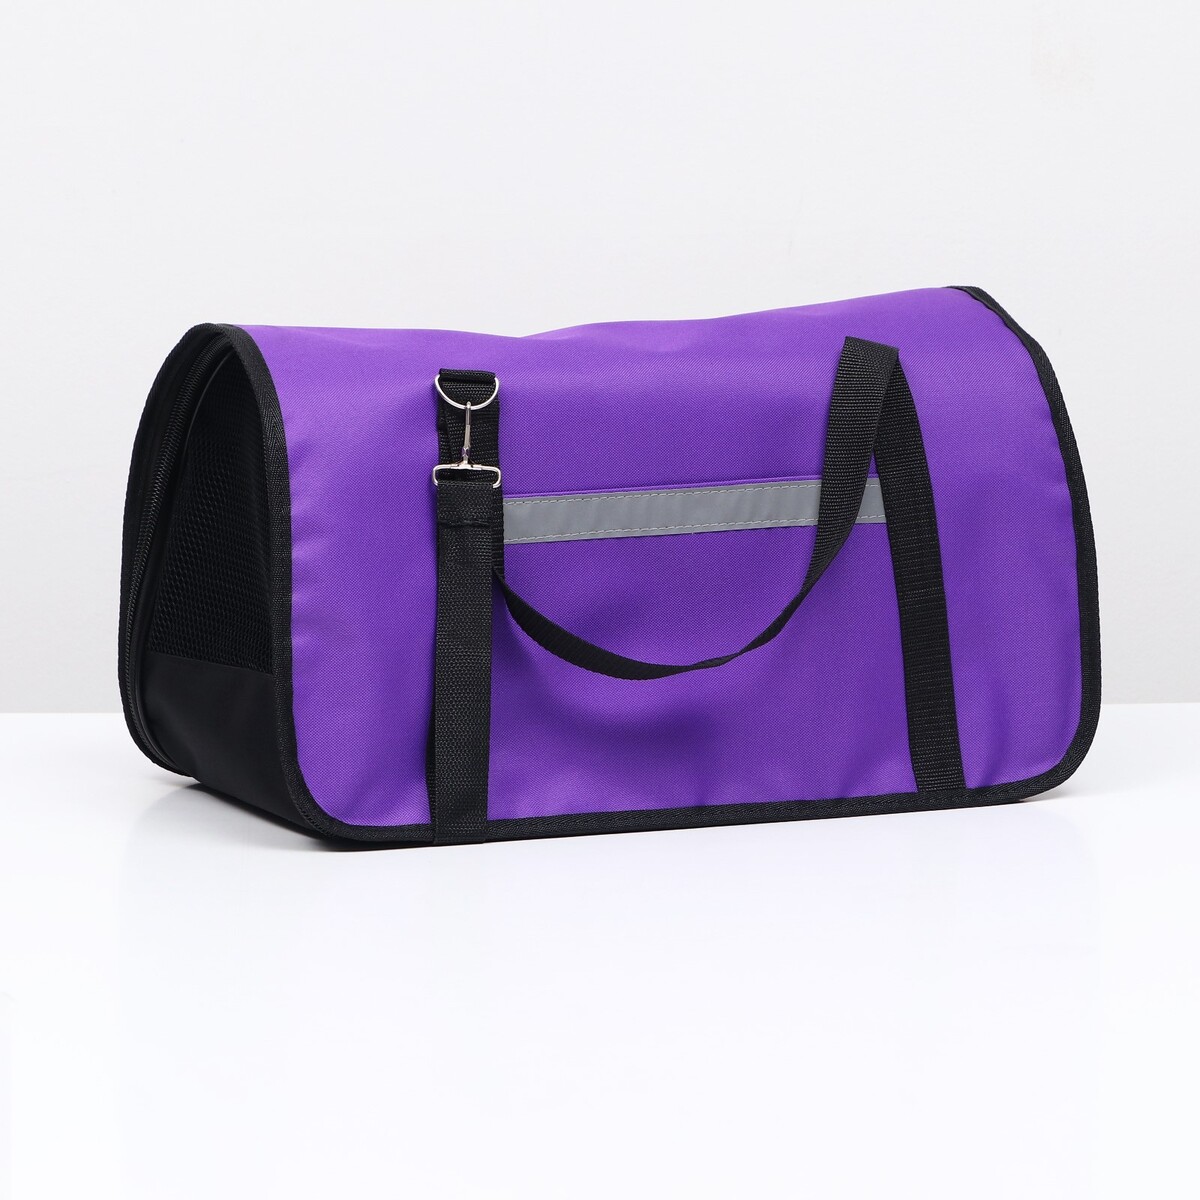 Переноска для животных, размер l 50 х 28 х 28 см, фиолетовая сумка переноска для животных оксфорд 42 х 22 х 29 см фиолетовая